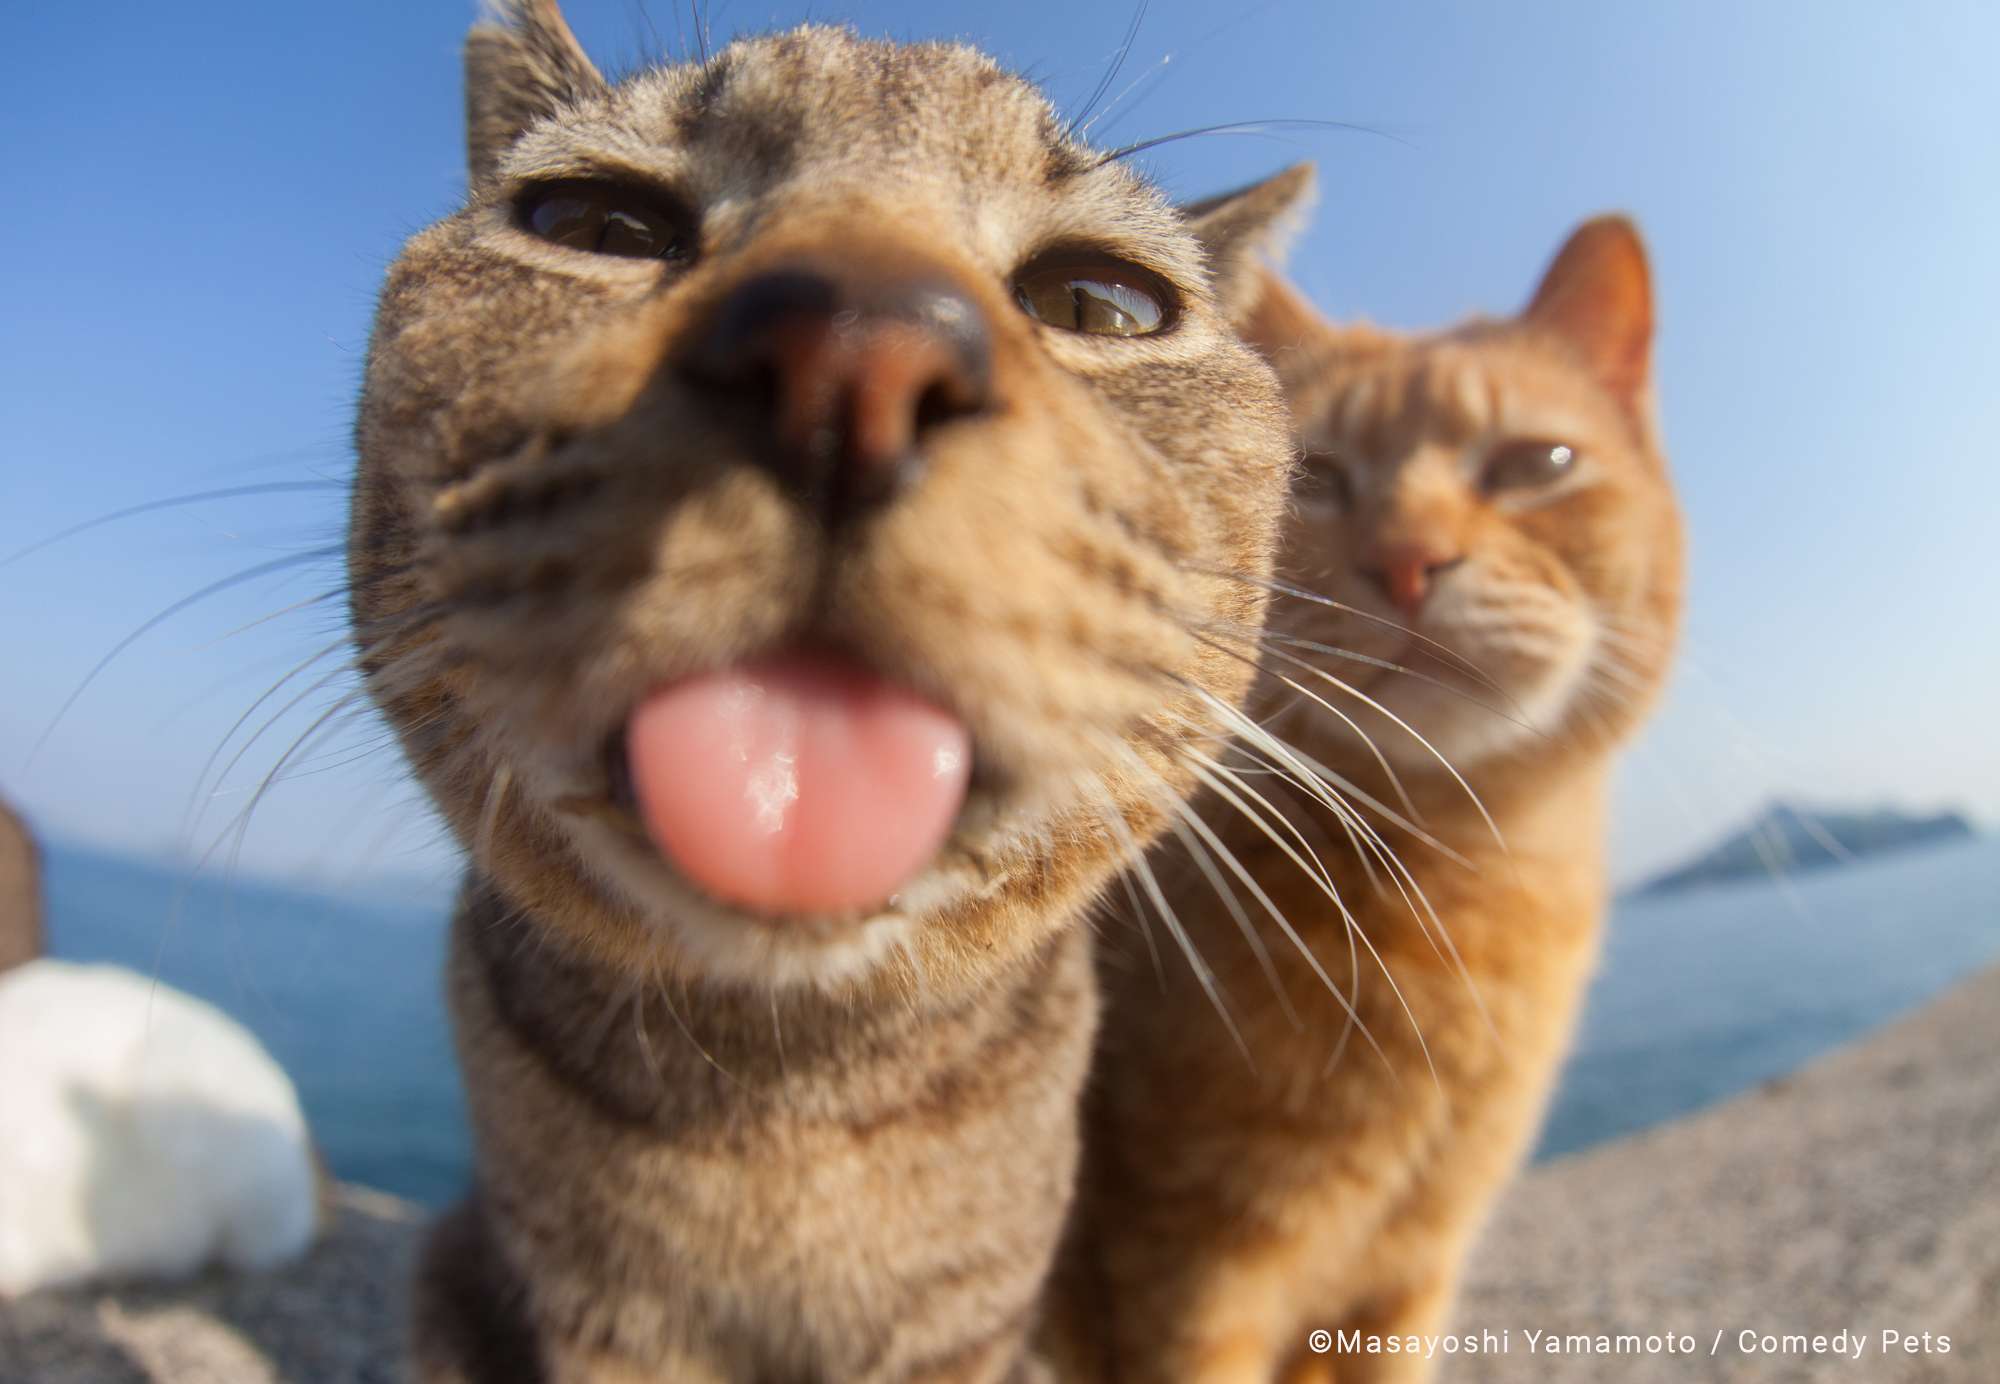 Foto de gatinho mostrando a língua para o fotógrafo é uma das melhores do Comedy Pet Awardds